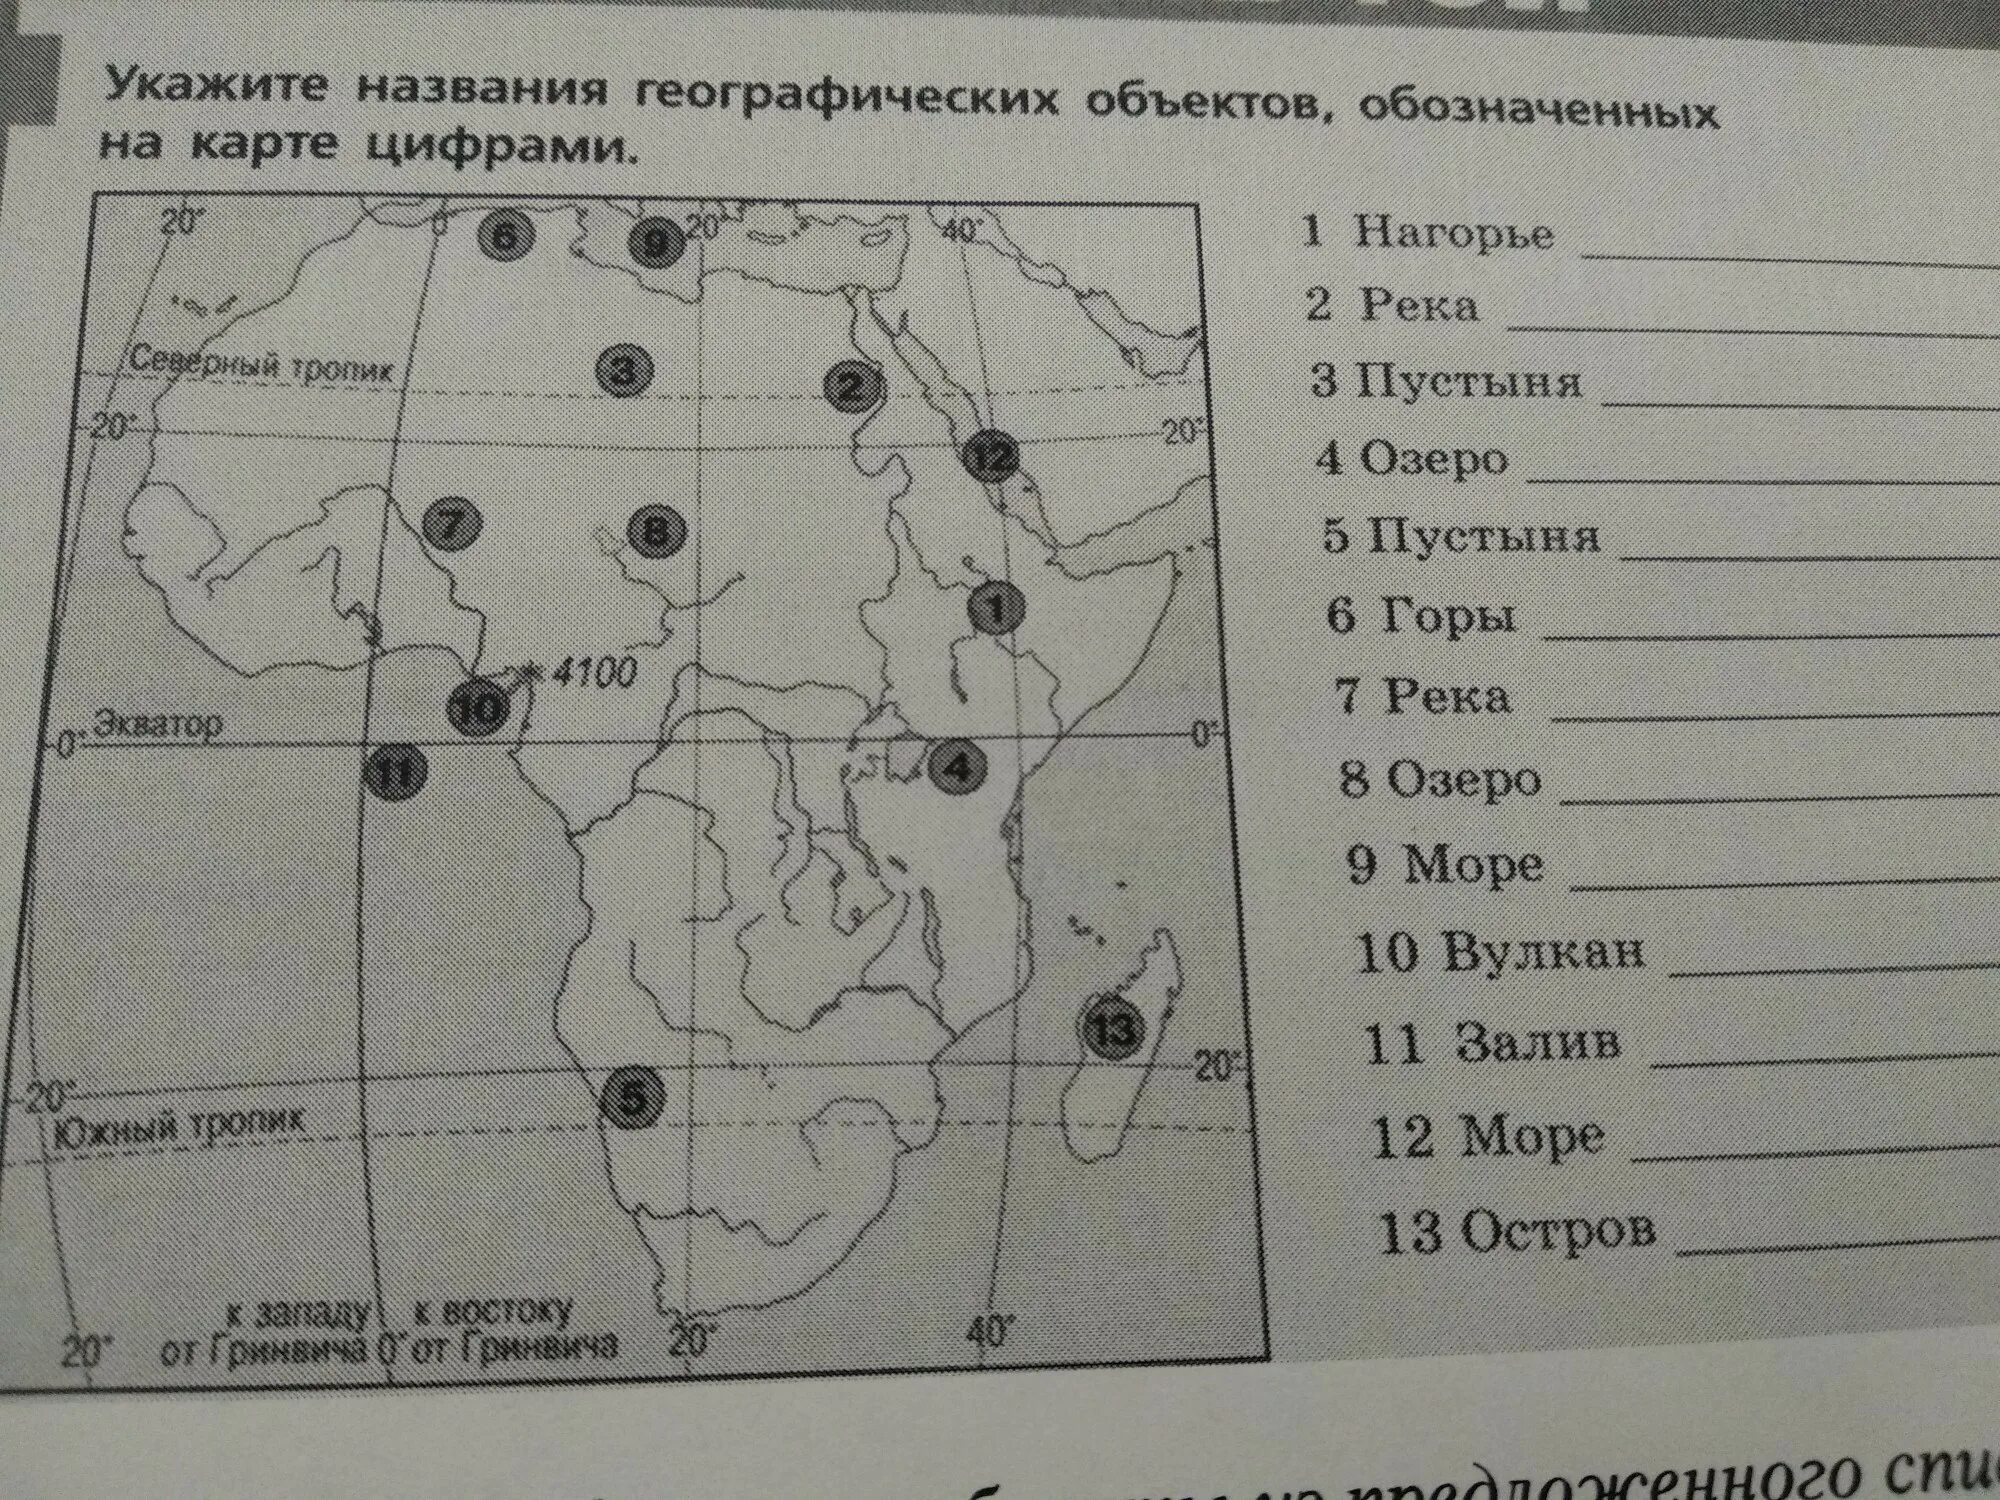 Название географических объектов Африки. Карта с названиями географических объектов. Номенклатура по географии. Названия объектов обозначенных на карте.